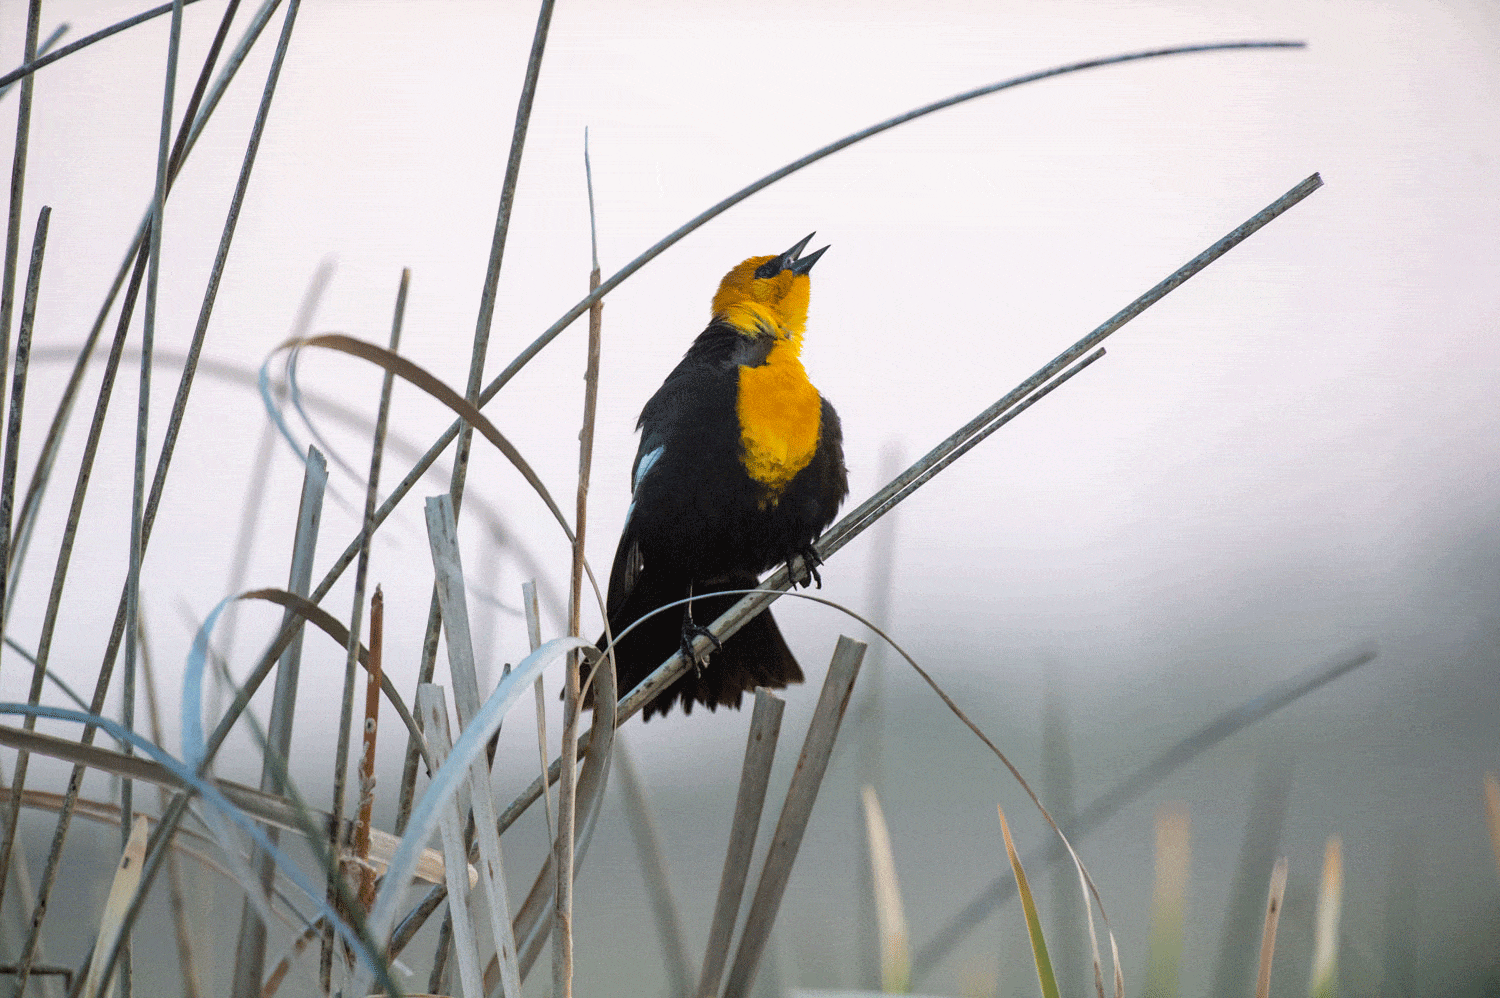 Read More: Celebrate Bird Month in Nebraska